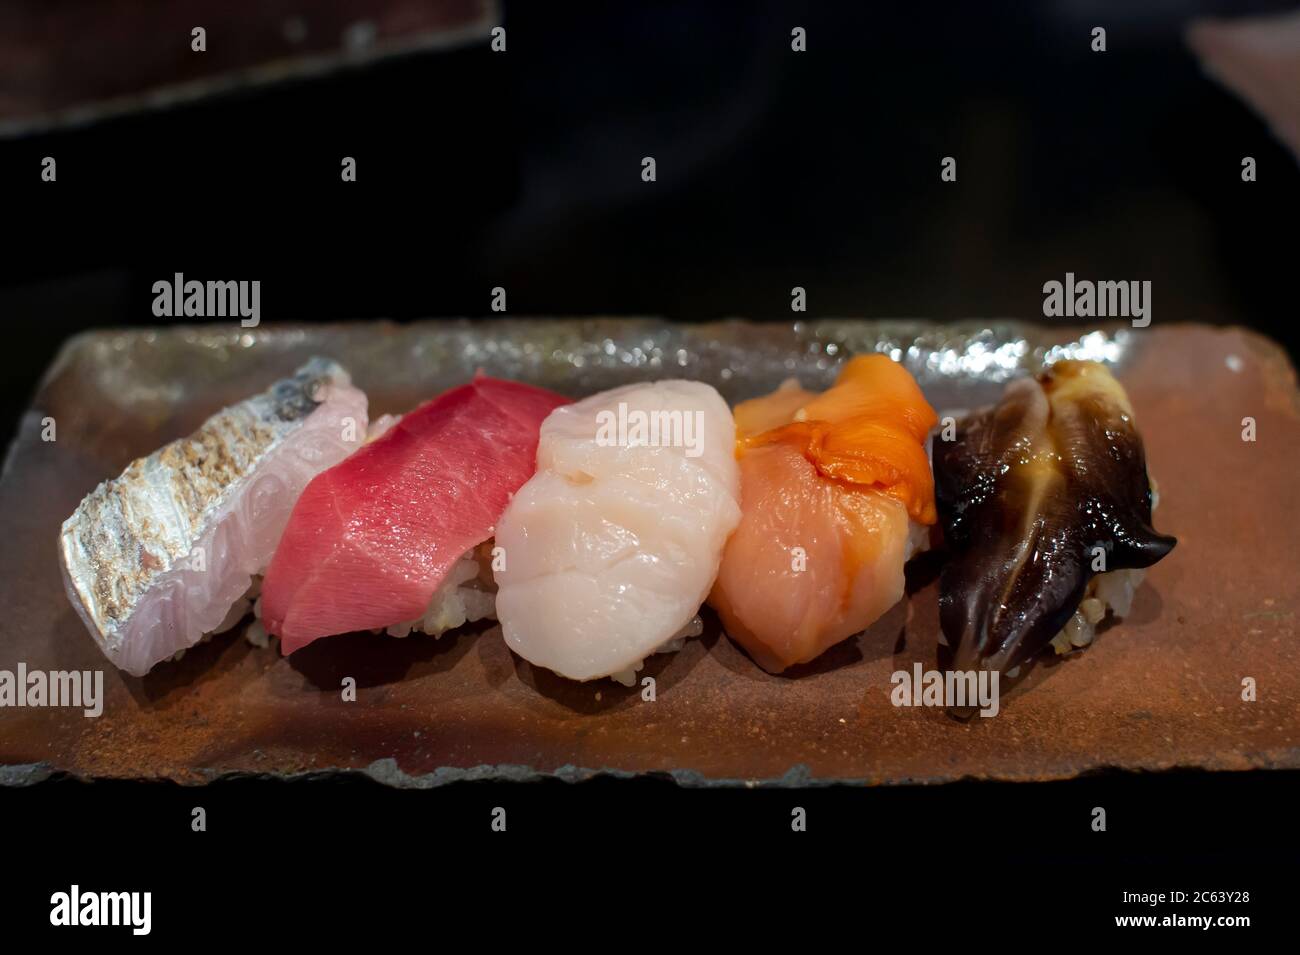 Das Premium Sushi Set wird auf einem schwarzen Steinteller platziert. Ansicht von oben, dunkles Bild. Stockfoto